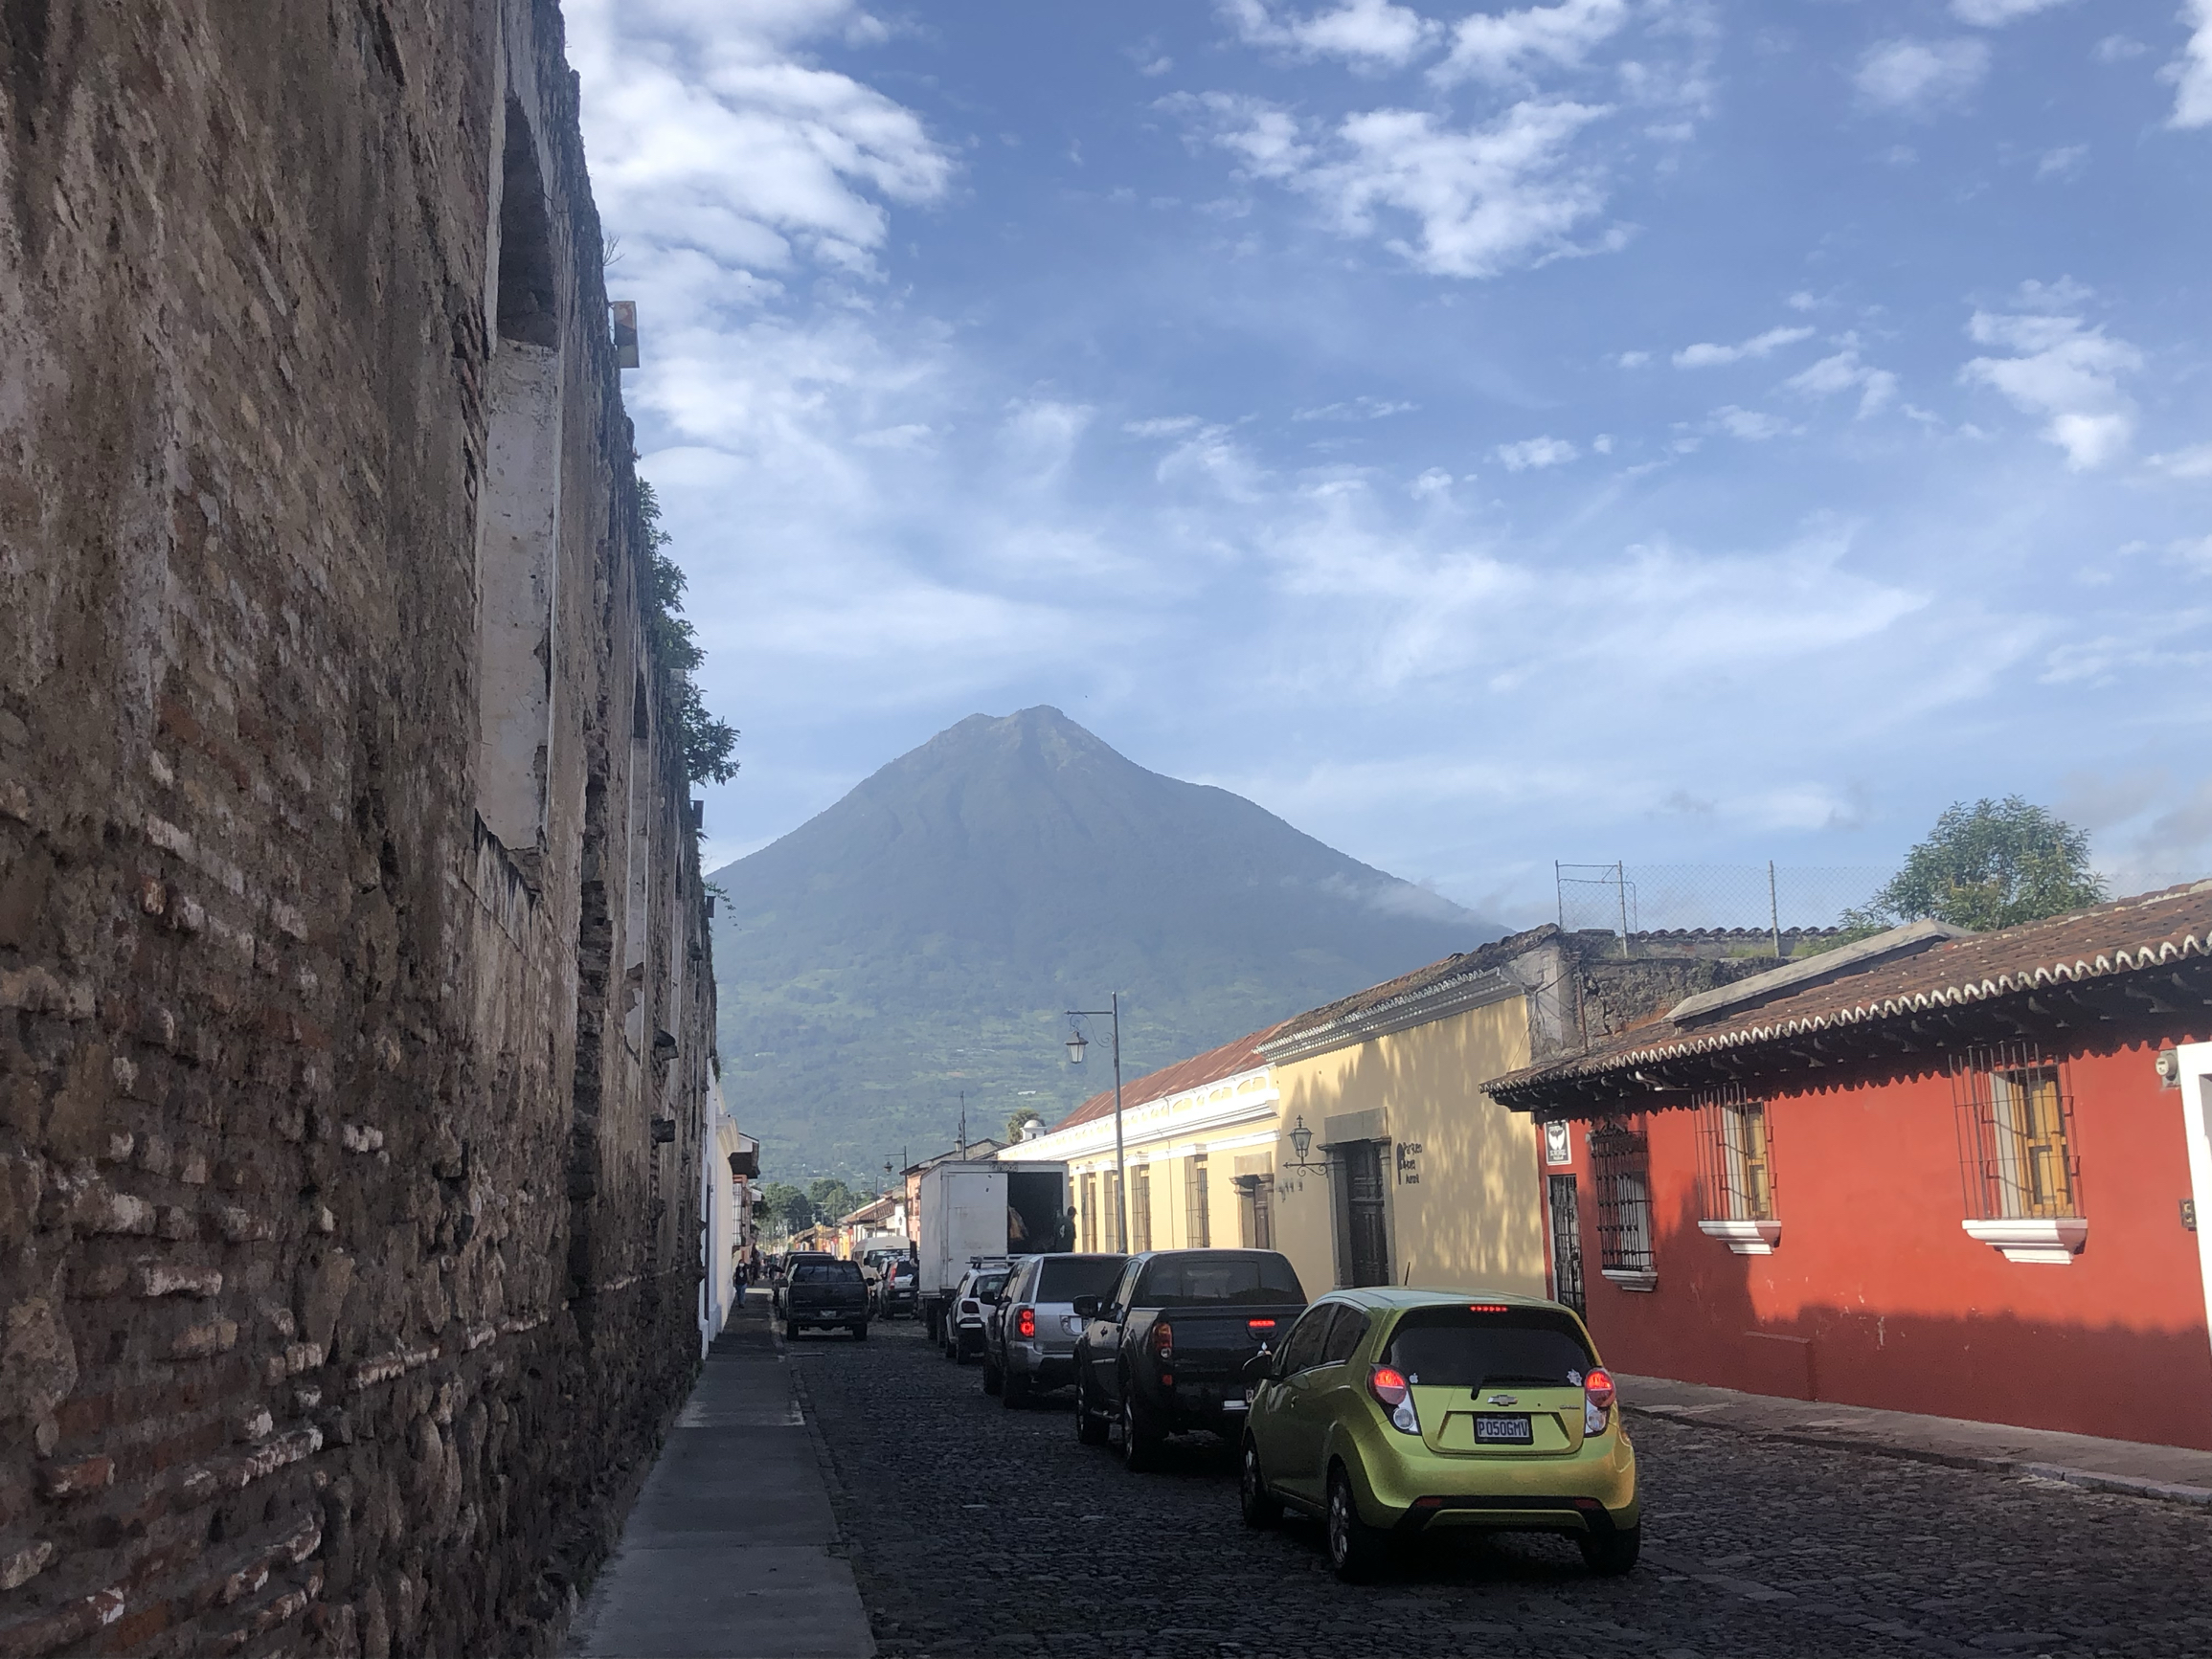 如果累了，就来中美洲的大理吧 安地瓜是一个火山群环抱的古城， 中美洲的一个历史重城。有历时，文化，欧